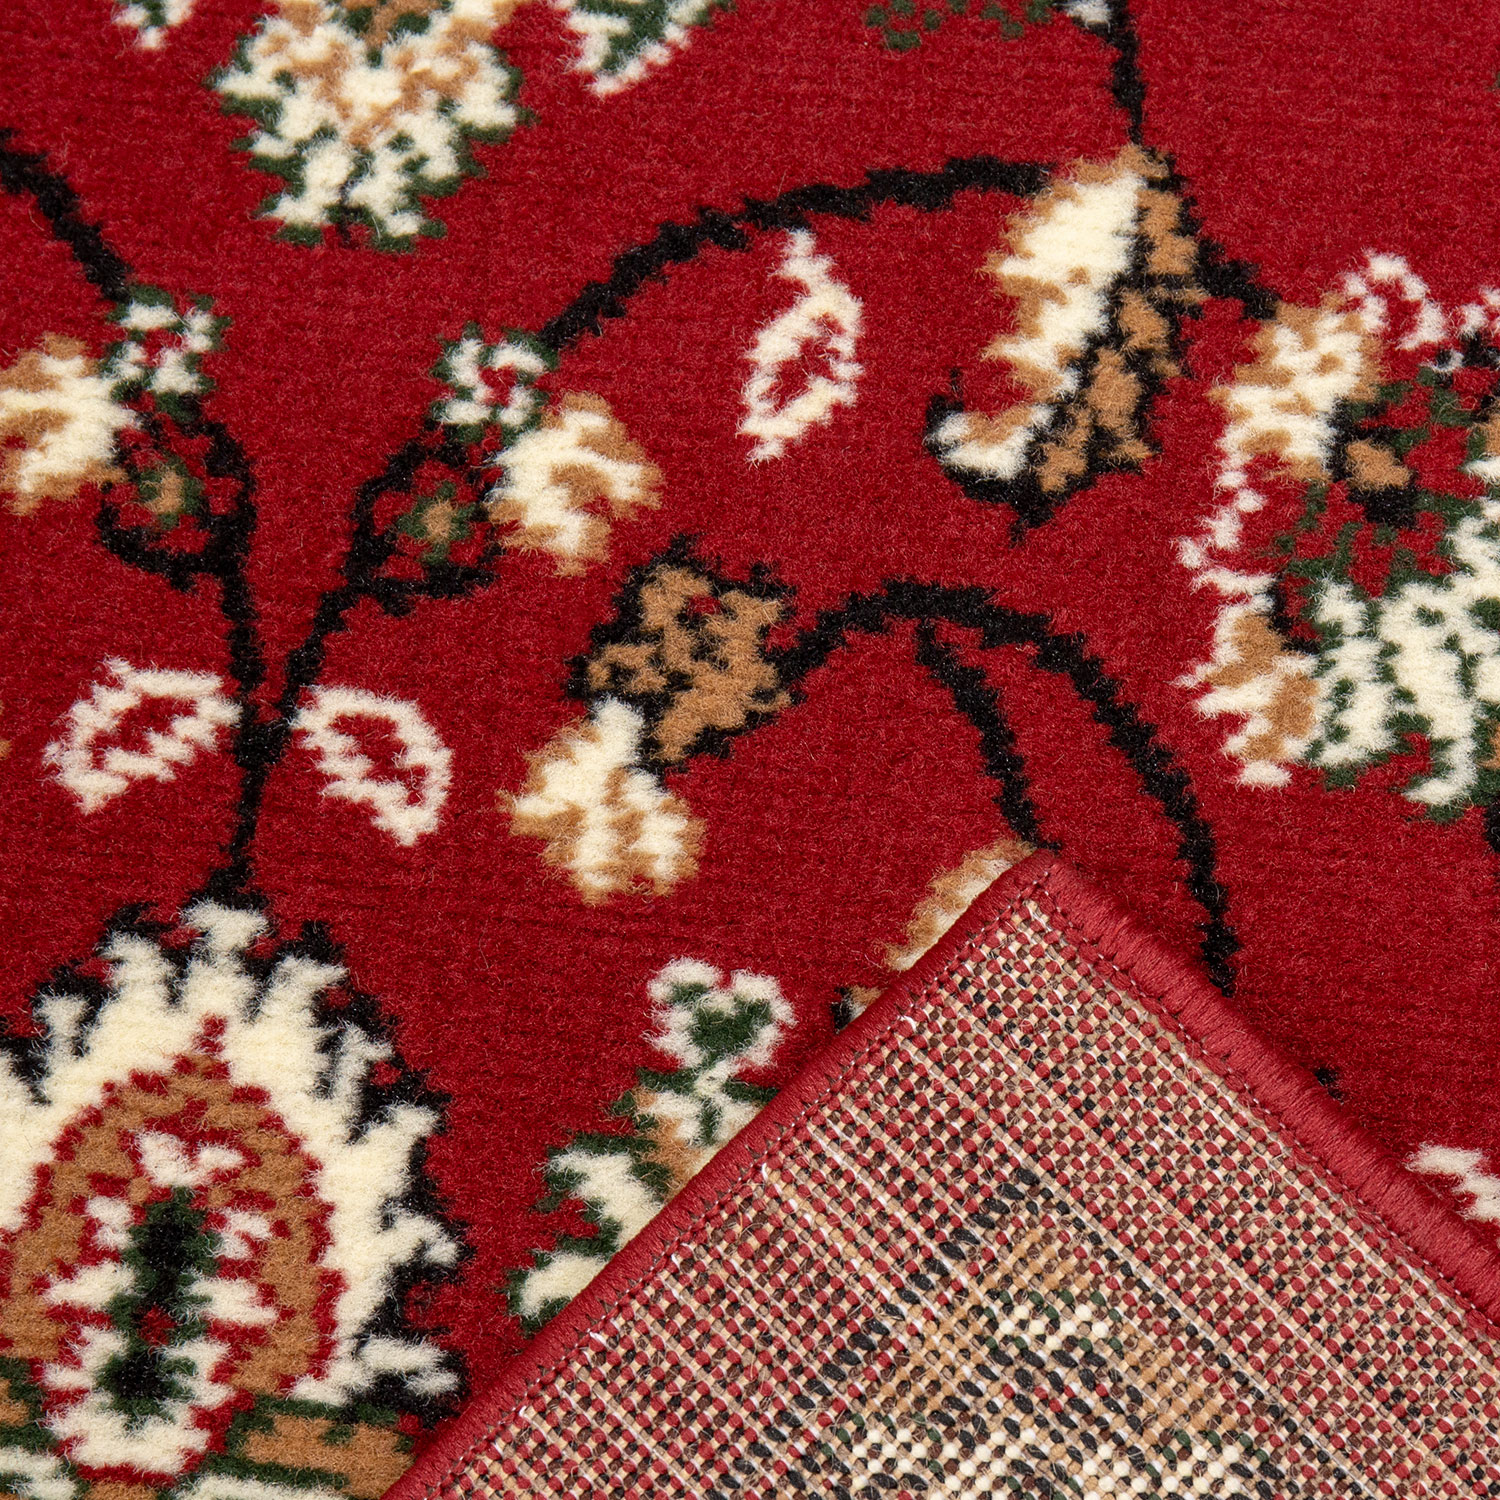 Orient Teppich rot beige klassisch dicht gewebt mit Ornament und  Blumenmotiven orient2430_red_3-4